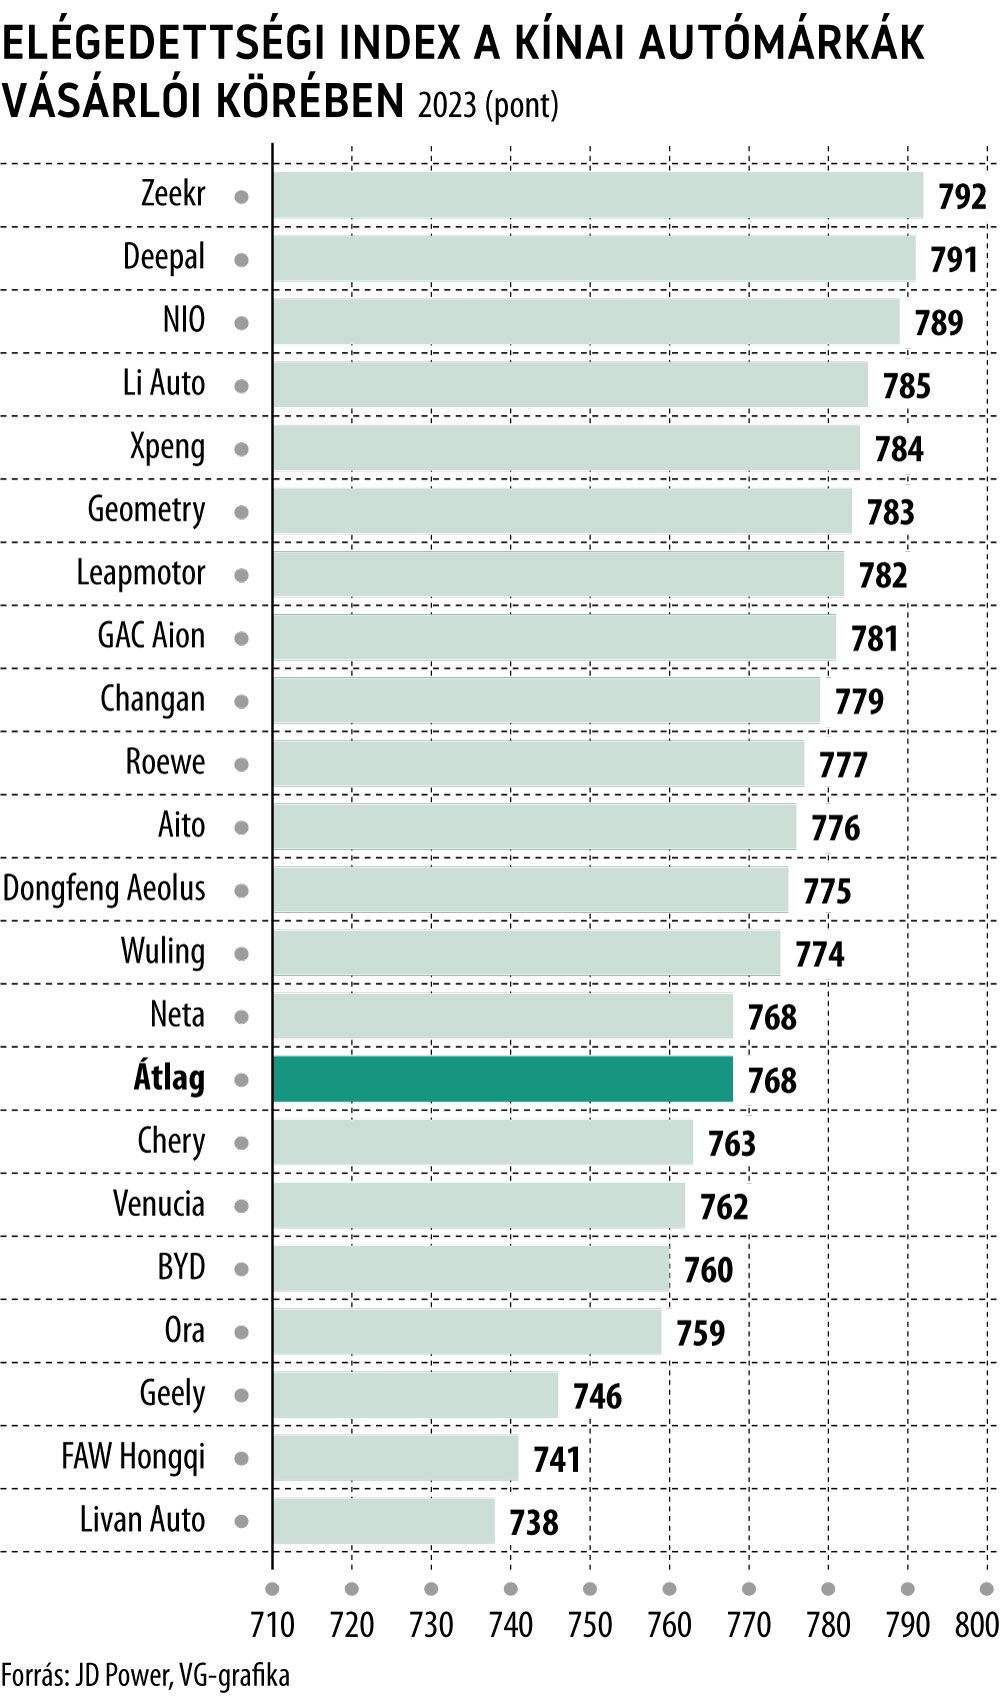 Elégedettségi index a kínai autómárkák vásárlói körében
